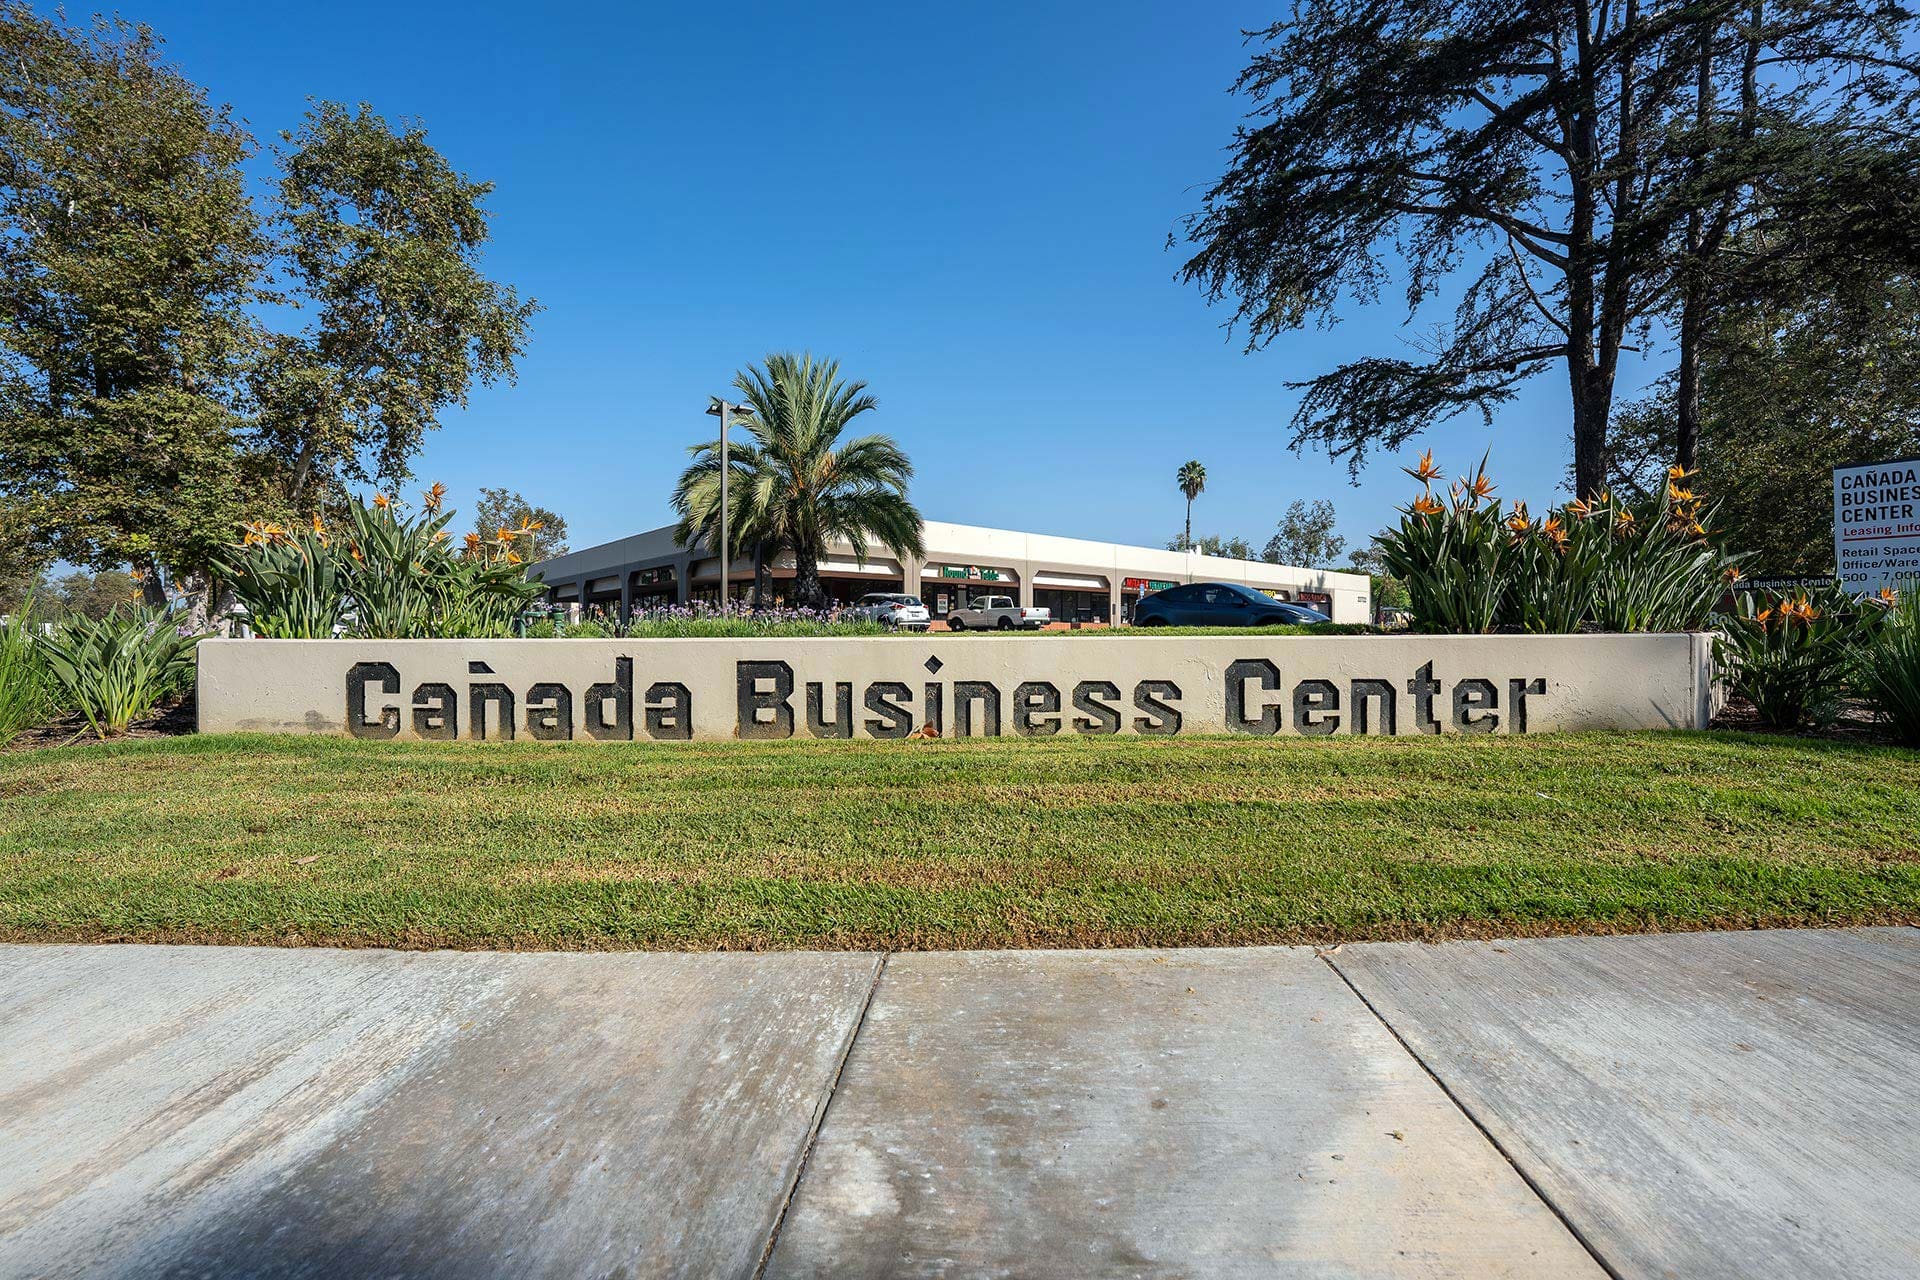 Canada Business Center